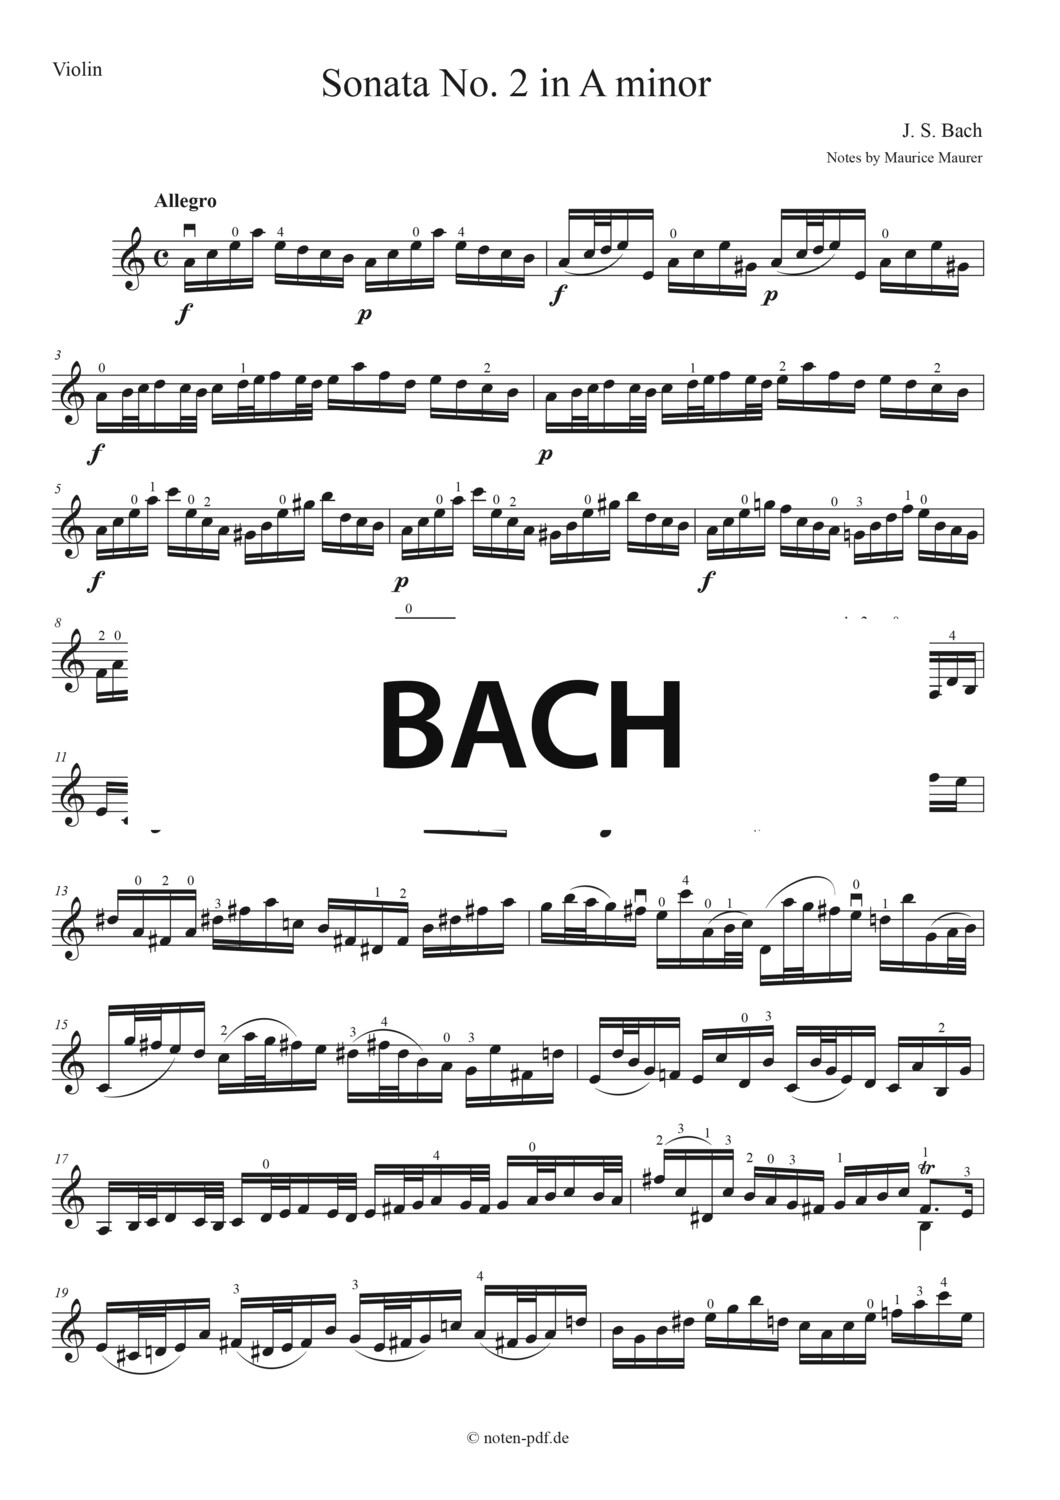 Bach: Sonata No. 2 - 4. Mov. "Allegro"